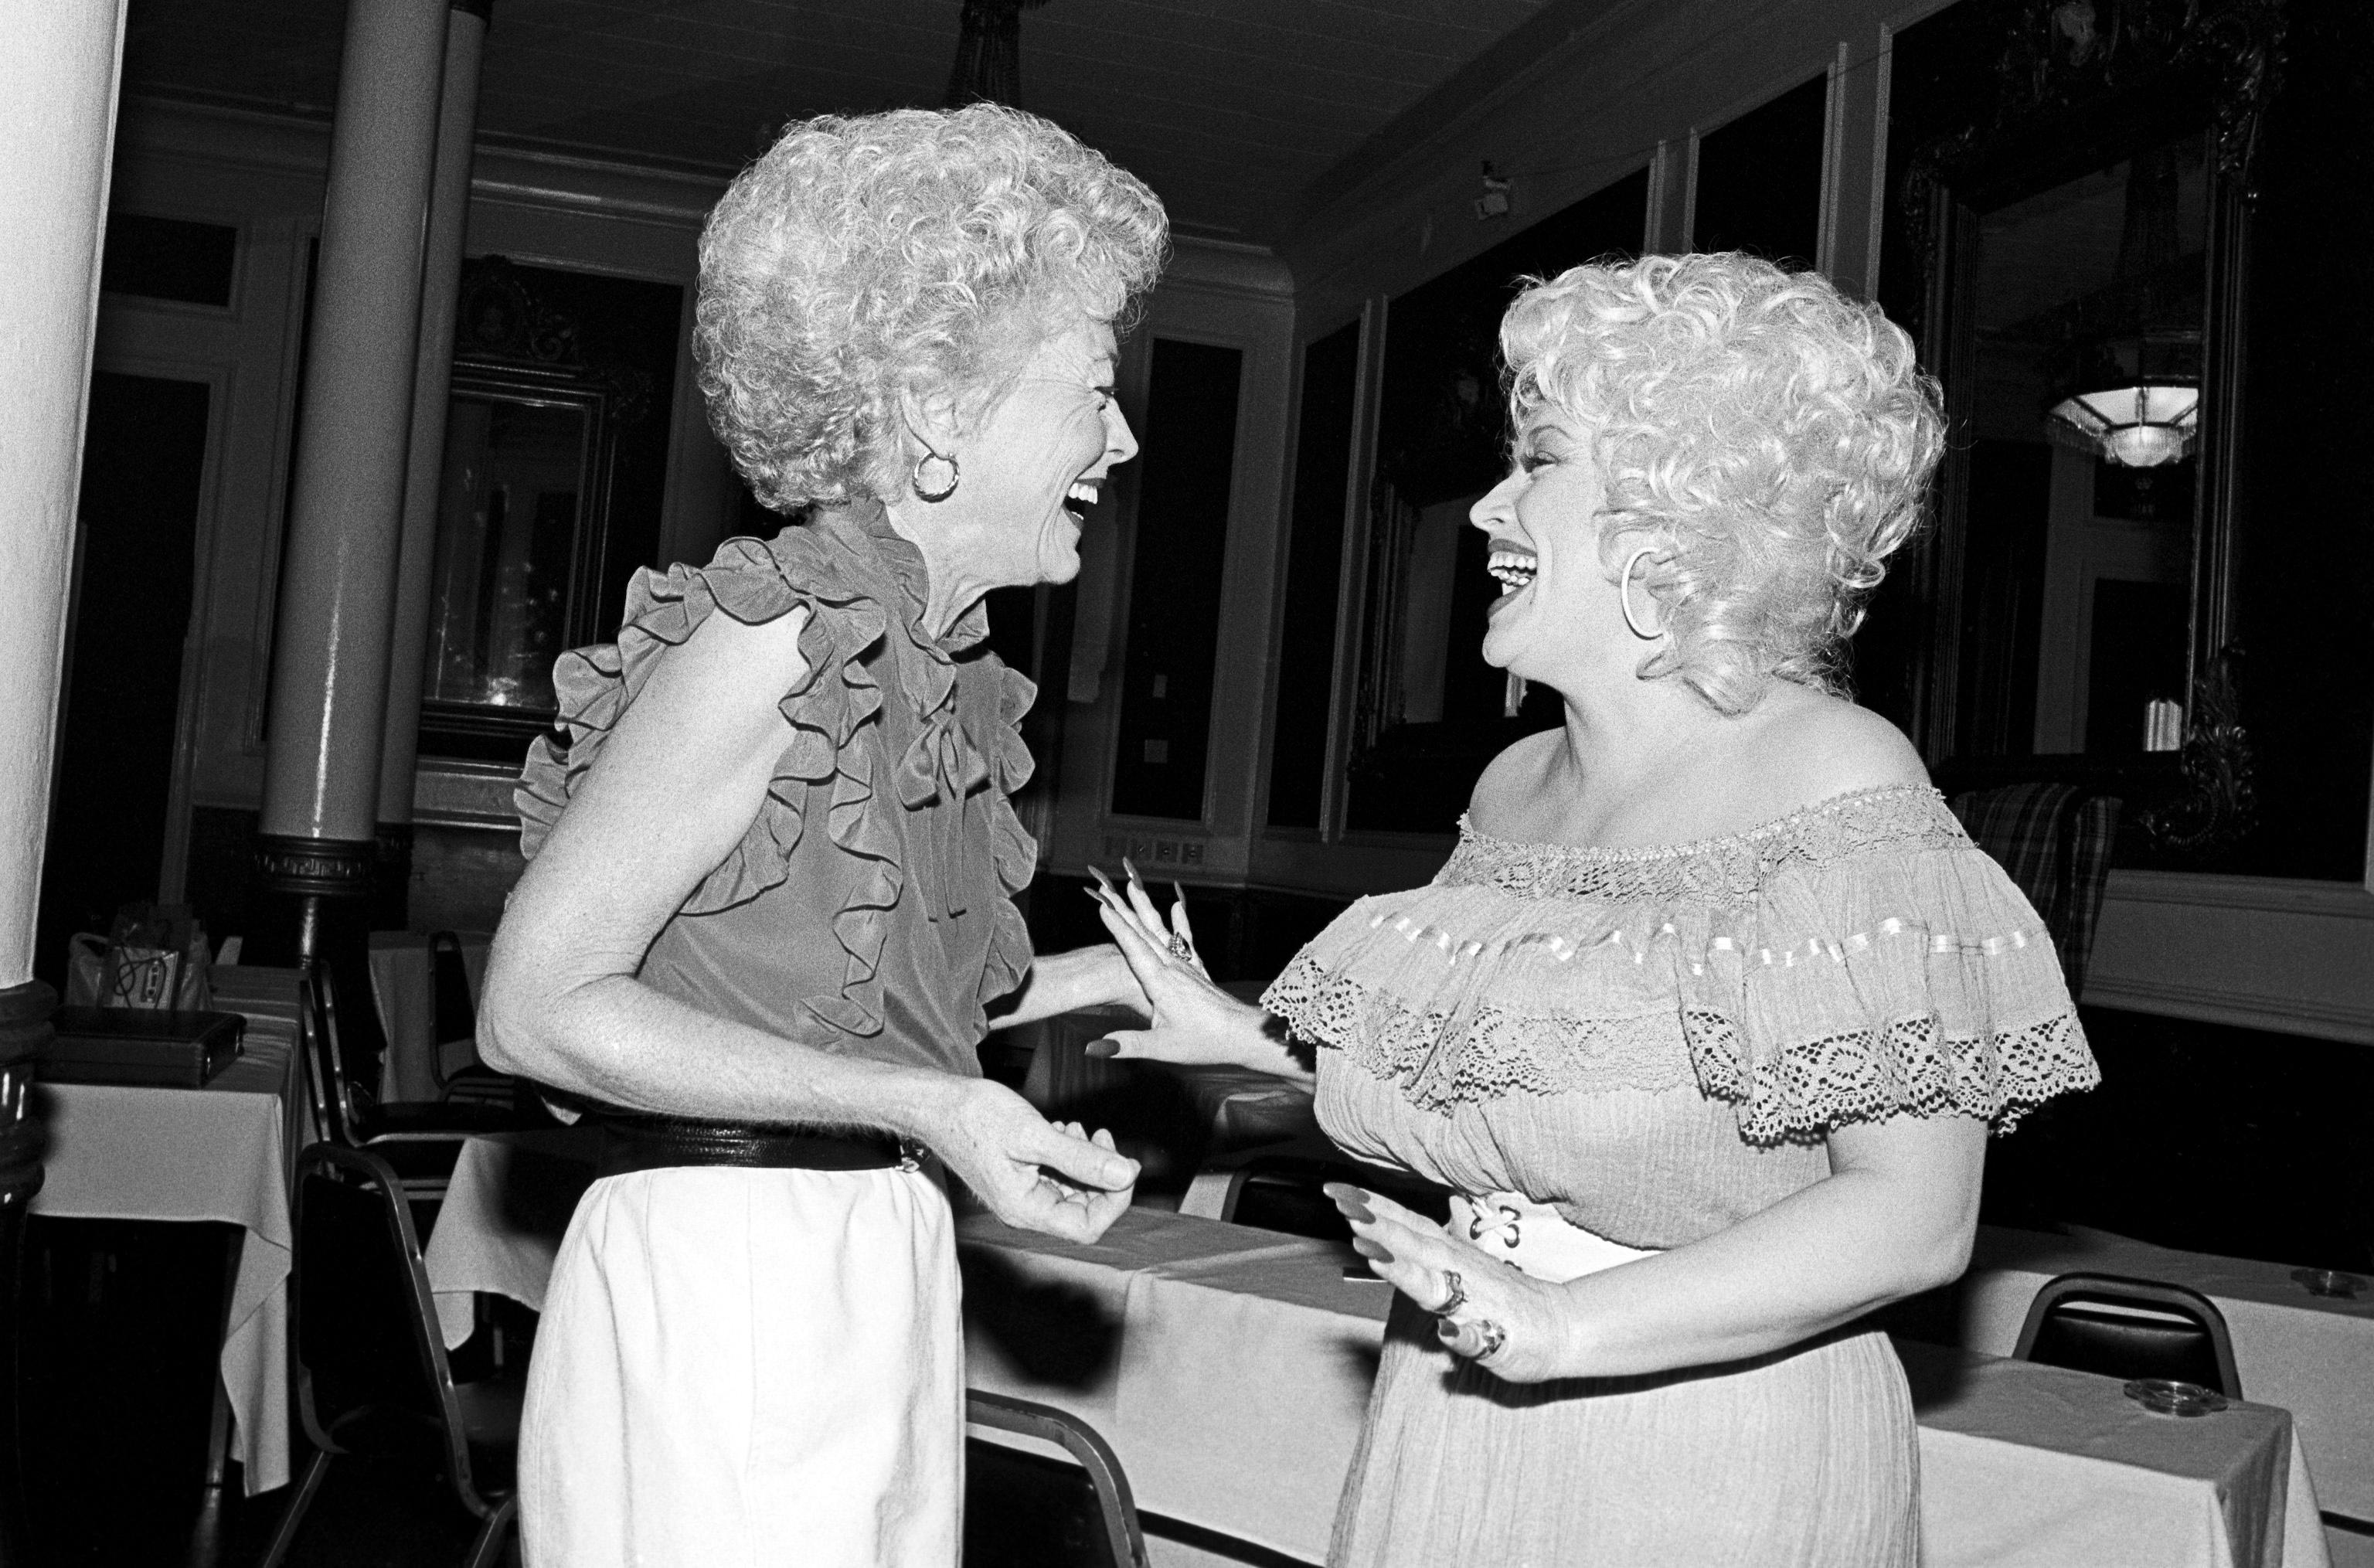 Die texanische Politikerin und ehemalige Gouverneurin von Texas, Ann Richards, mit Dolly Parton, aufgenommen im Driskill Hotel in Austin, Texas, im Jahr 1982 vom Fotografen Scott Newton

Notizen des Fotografen: Wir waren bei einem Shooting für Anns